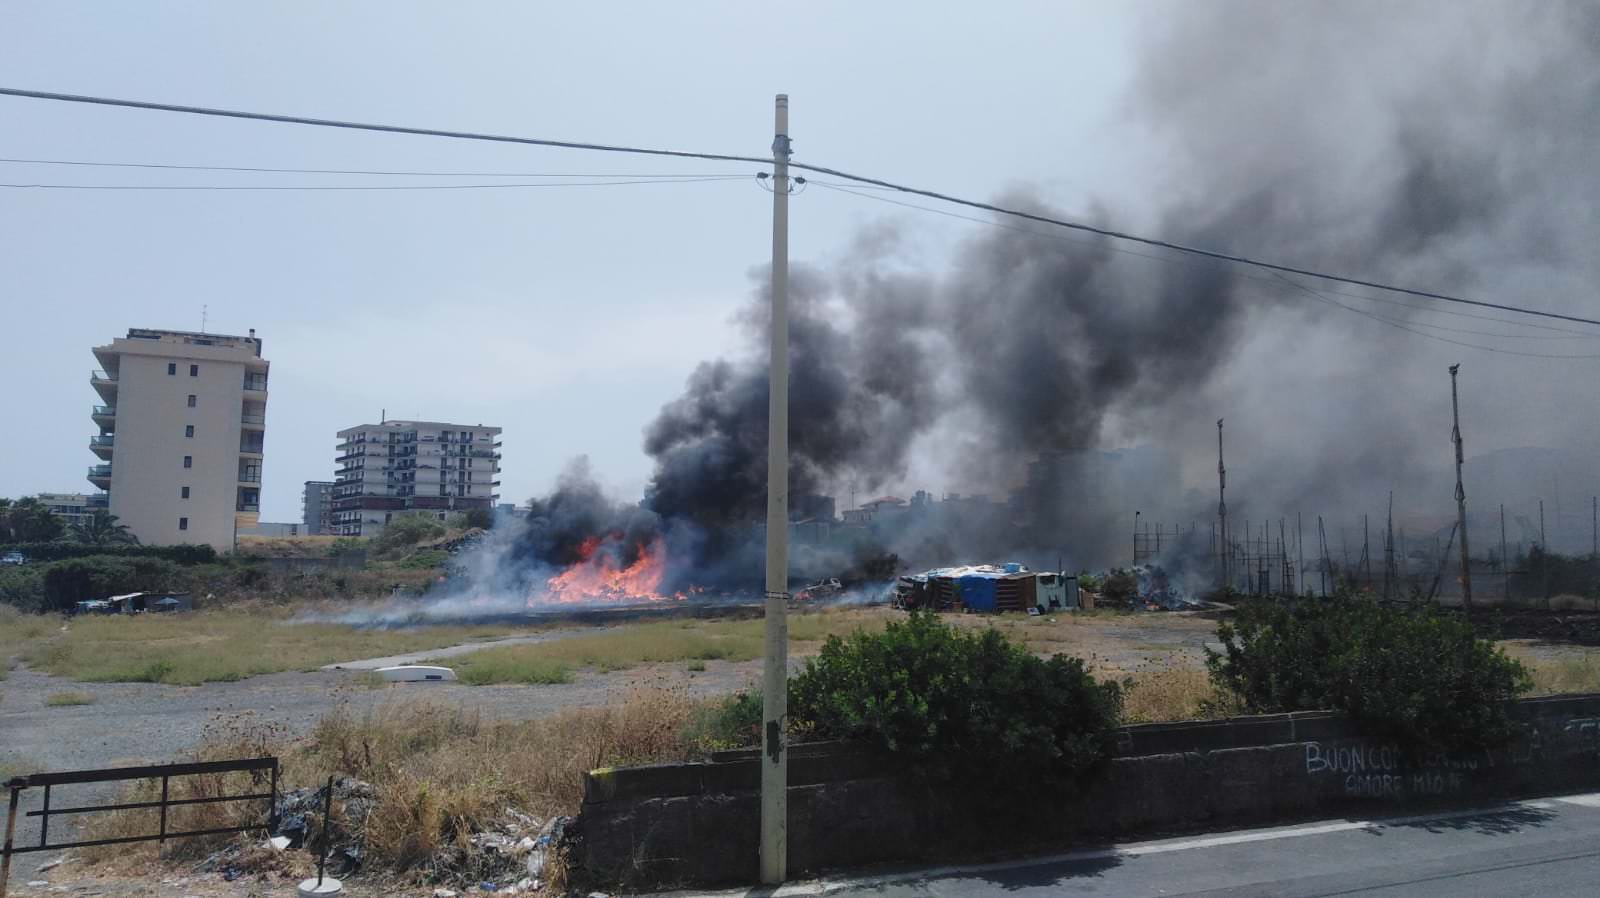 Paura in via Anfuso, fiamme mettono a rischio due famiglie di senzatetto: area evacuata